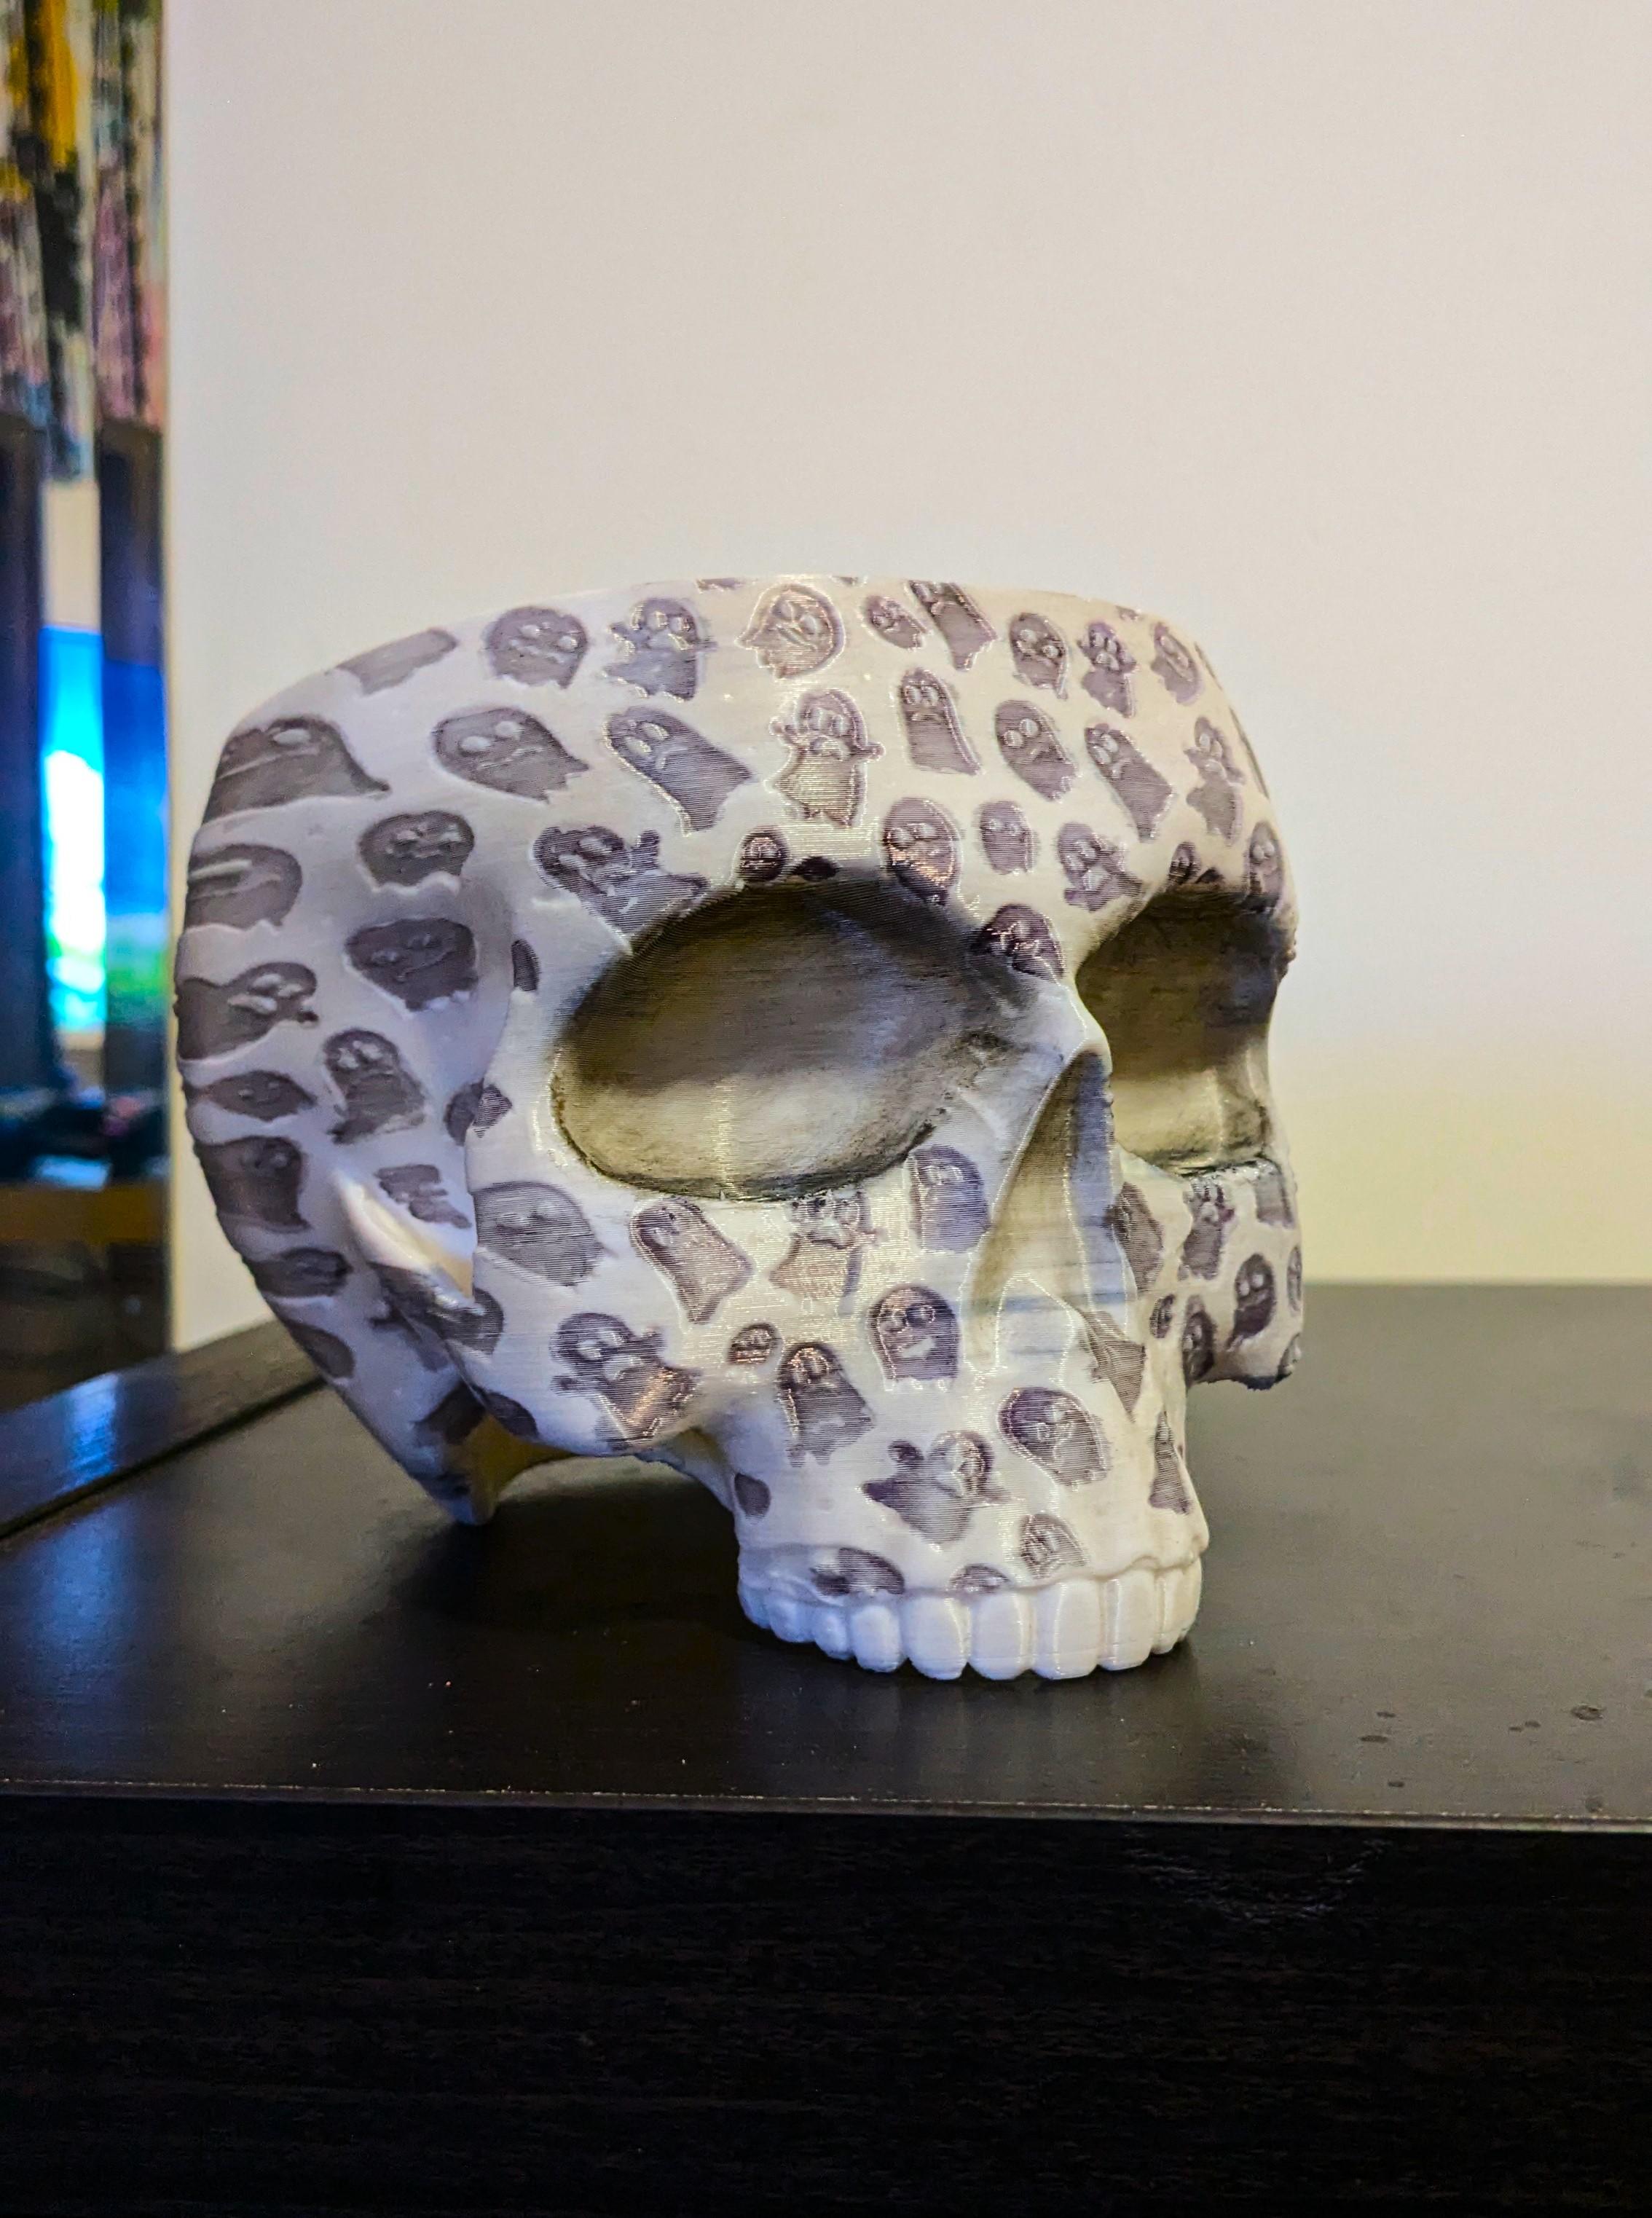 Ghosty Skull Planter-Bowl 3d model